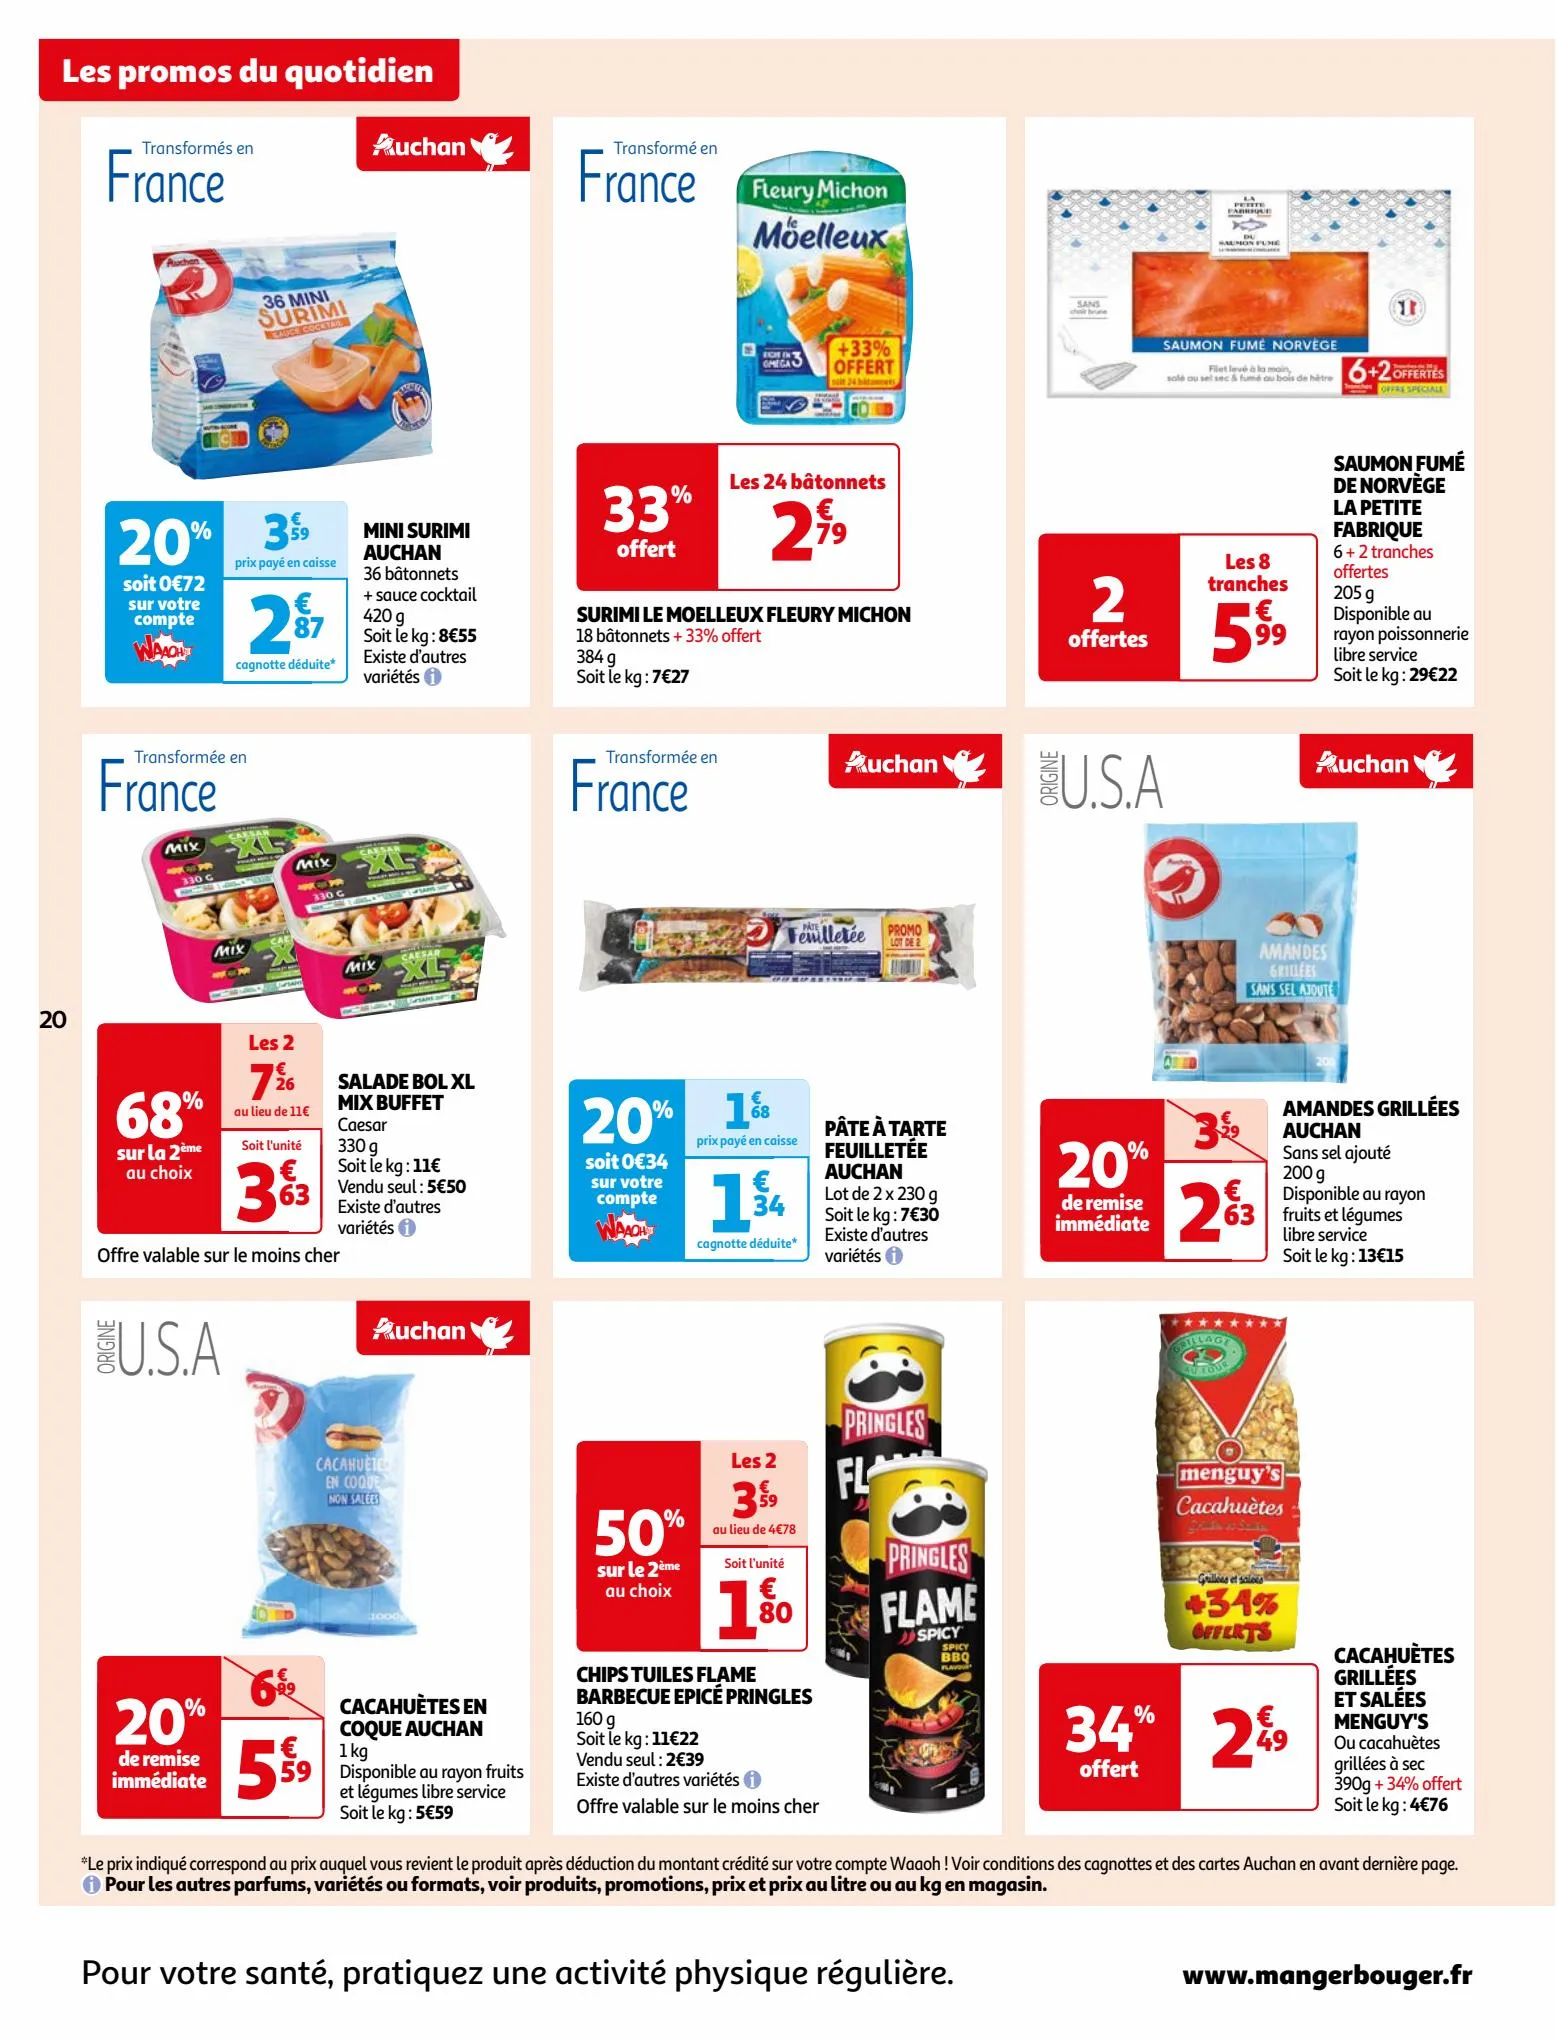 Catalogue Vos produits laitiers à petits prix !, page 00020